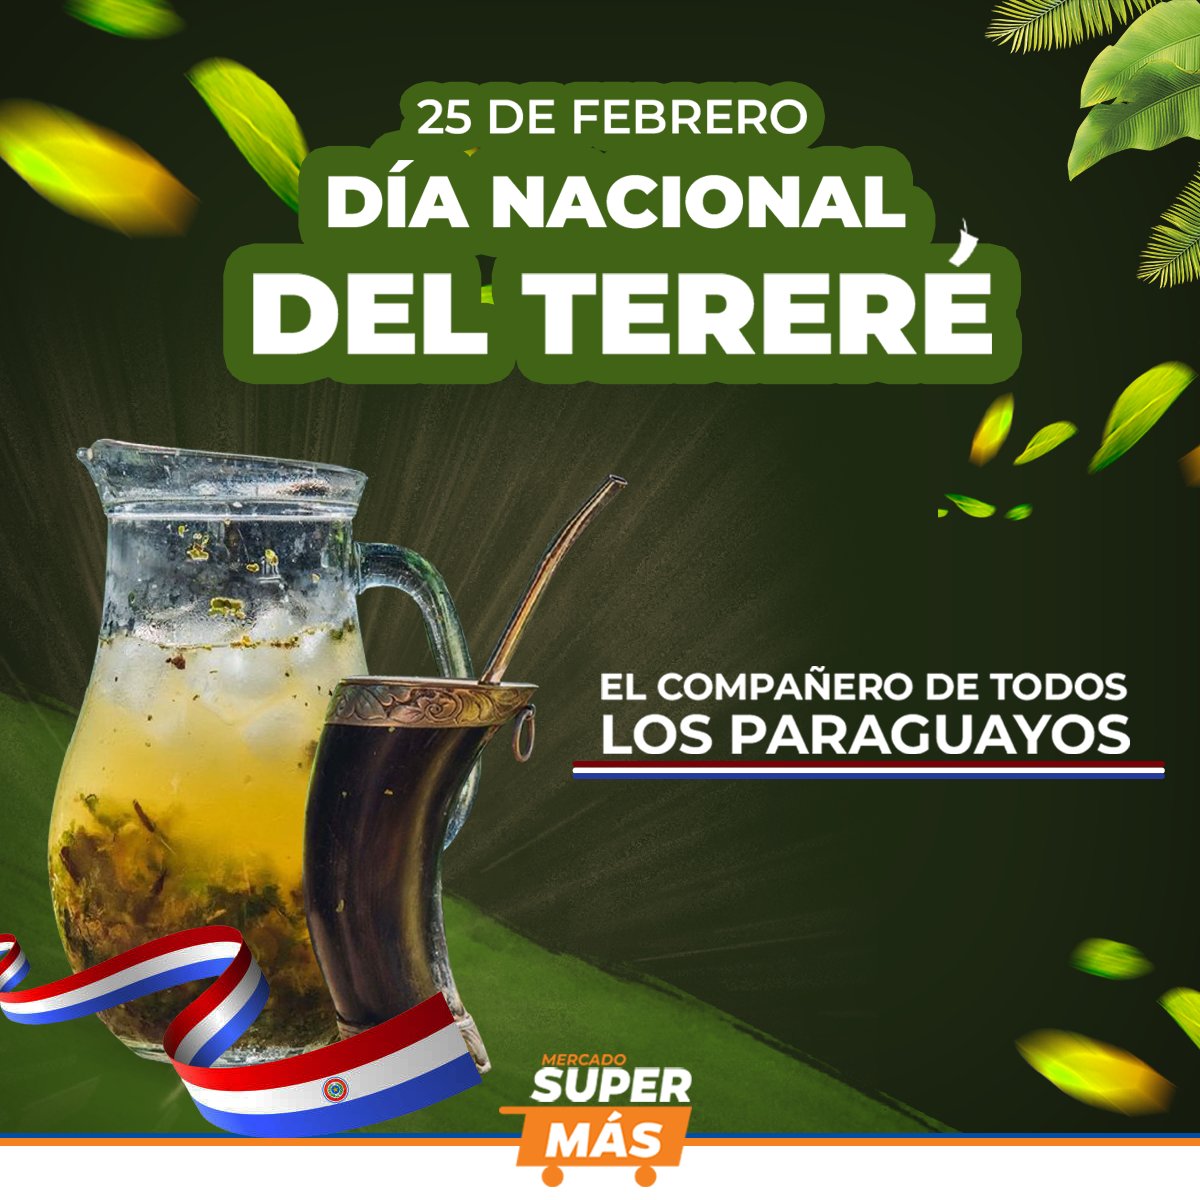 🇵🇾FELIZ DIA DEL TERERÉ 🇵🇾
Hoy celebramos el día Nacional del Tereré

🔅¡Nuestra tradición, nuestra identidad! 💪🏻🇵🇾
.
.
#SuperMas #SuperMasPy #diadelterere #25defebrero #Paraguay